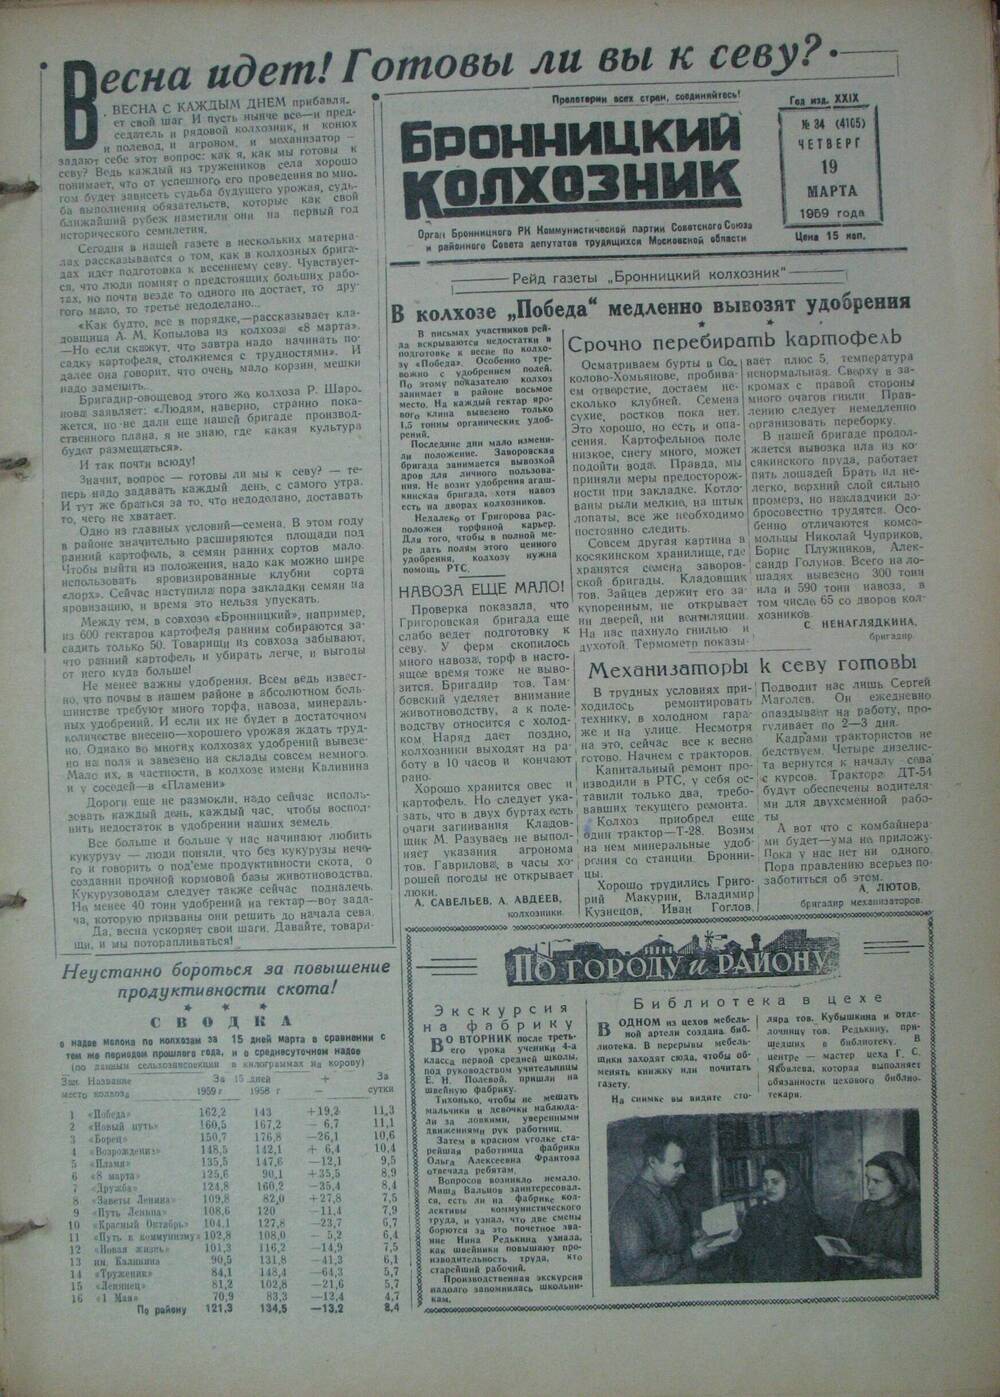 Бронницкий колхозник,  газета № 34 от 19 марта 1959г